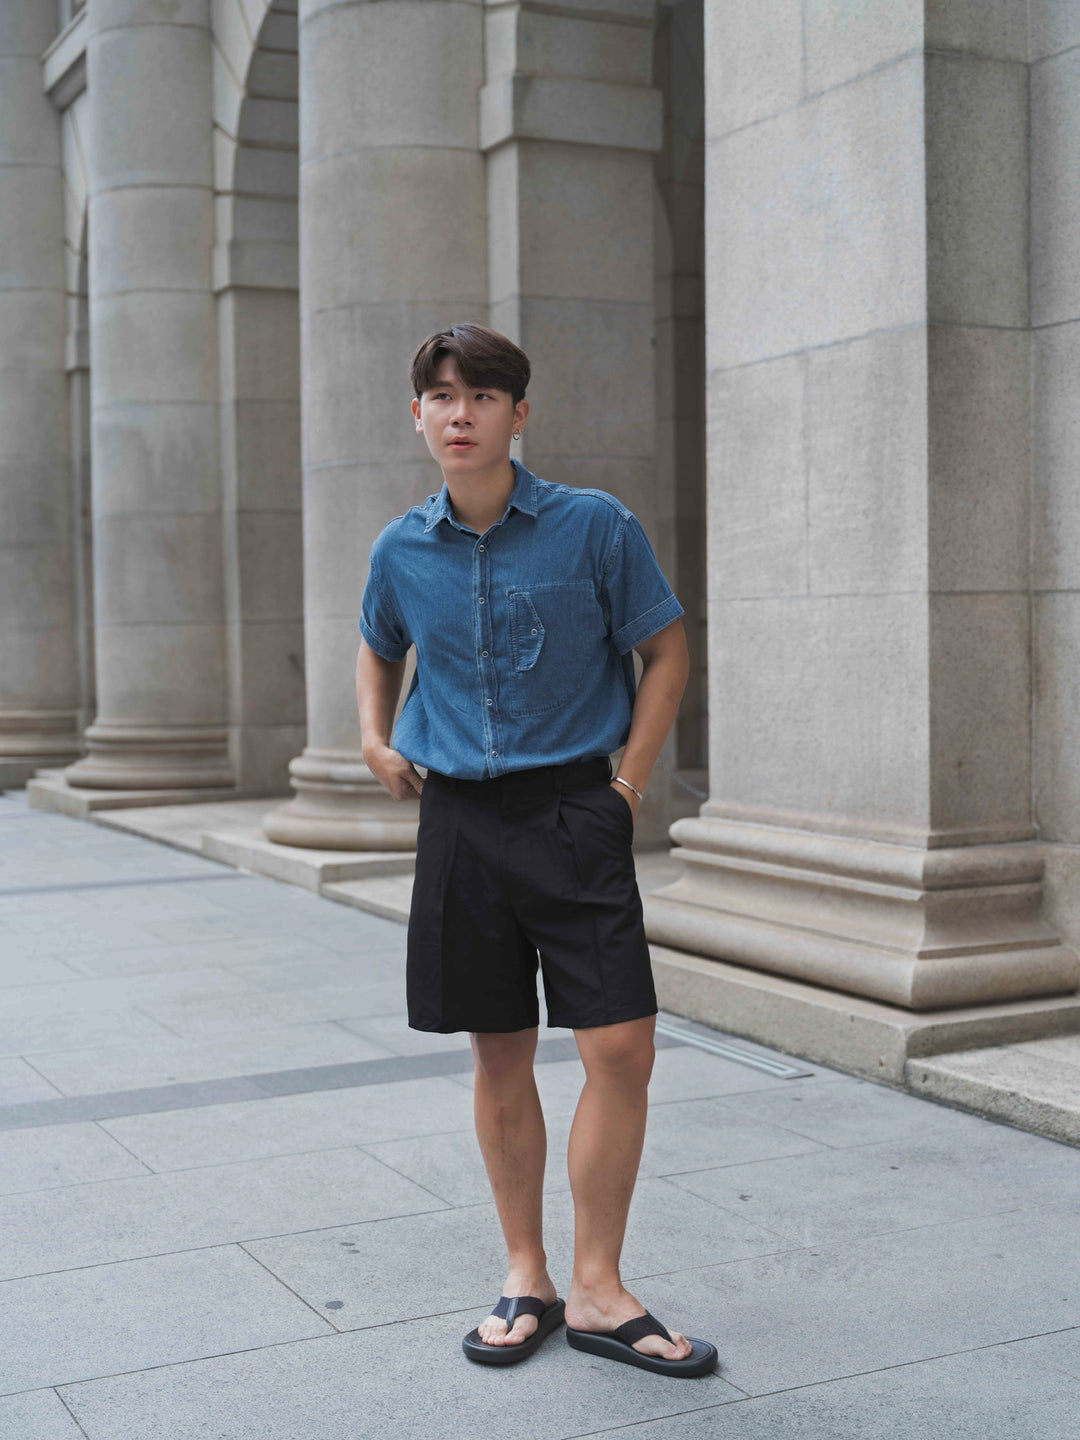 韓國男裝-牛仔布襯衫Denim Top